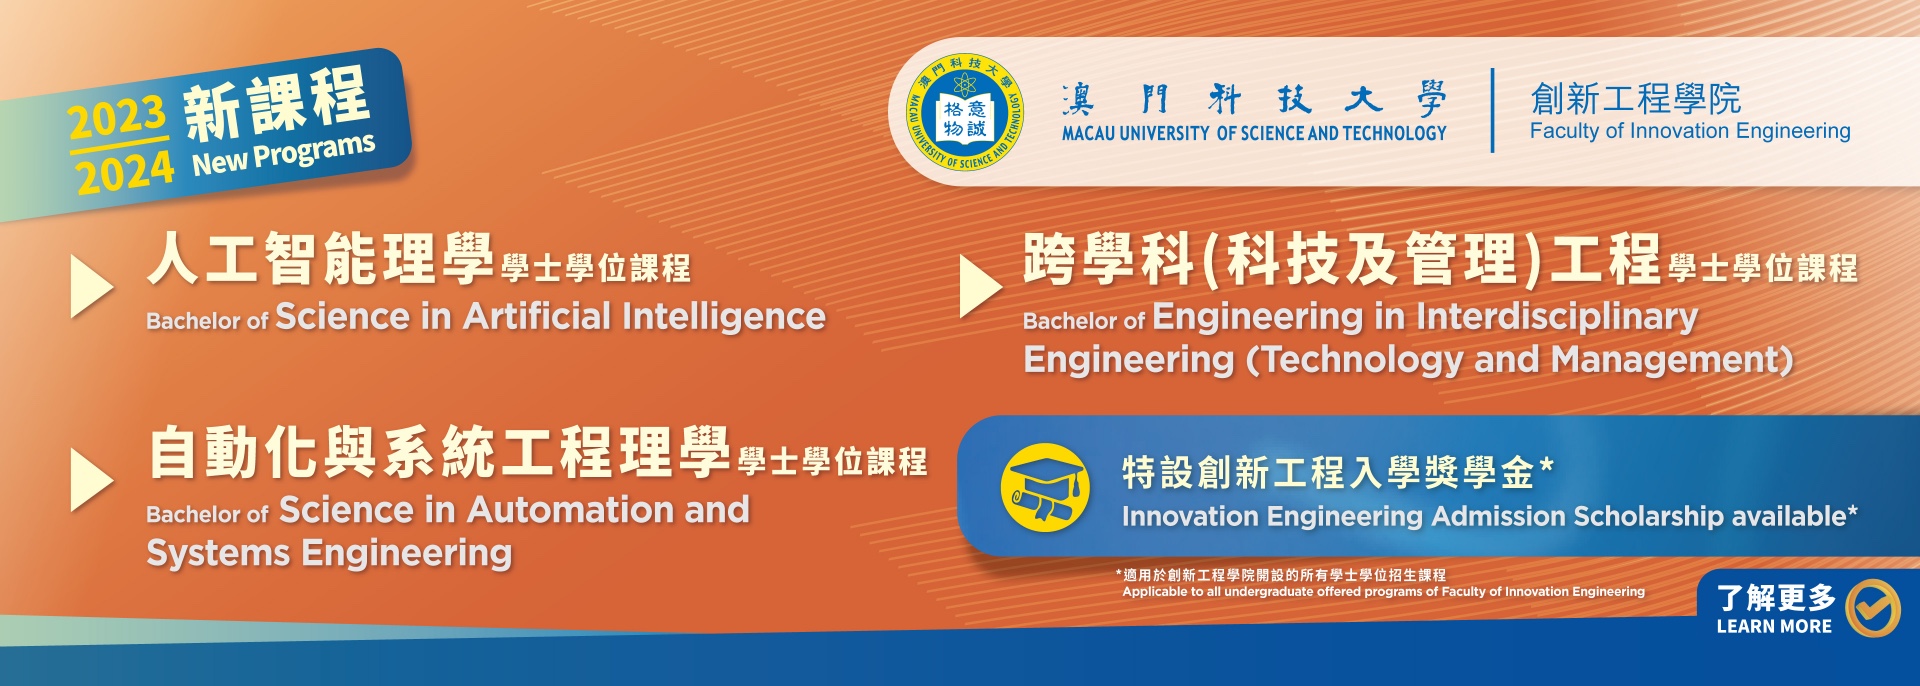 创新工程学院即将开办三个全新学士学位课程